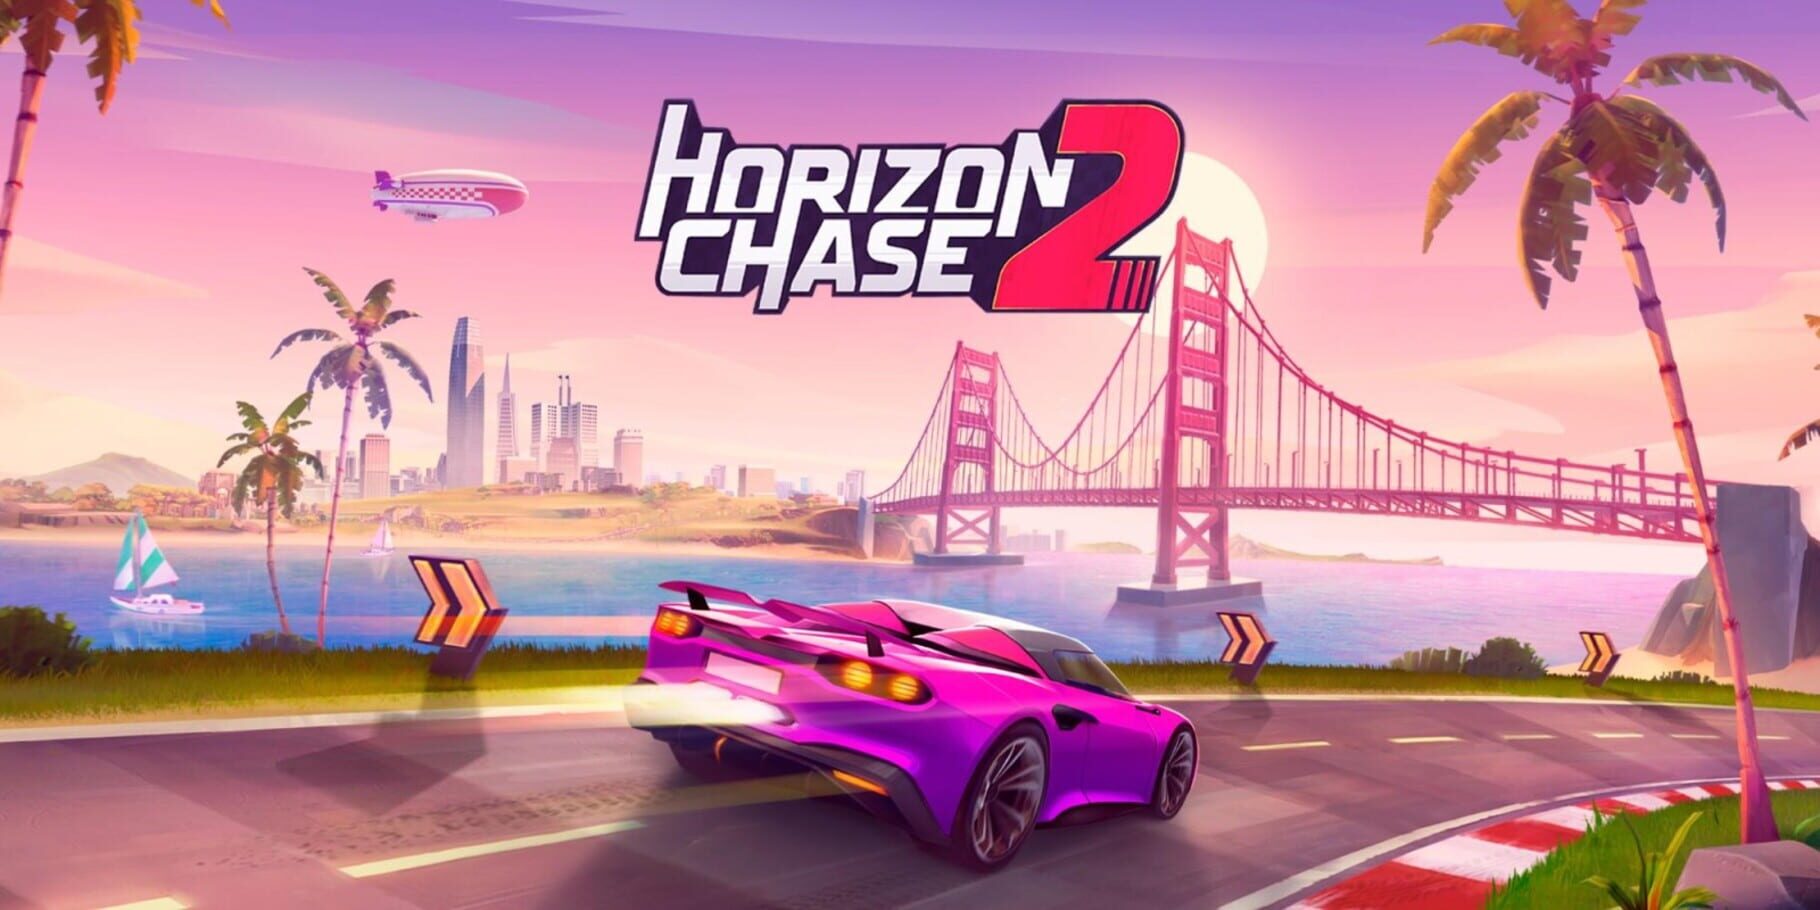 Artwork for Horizon Chase 2